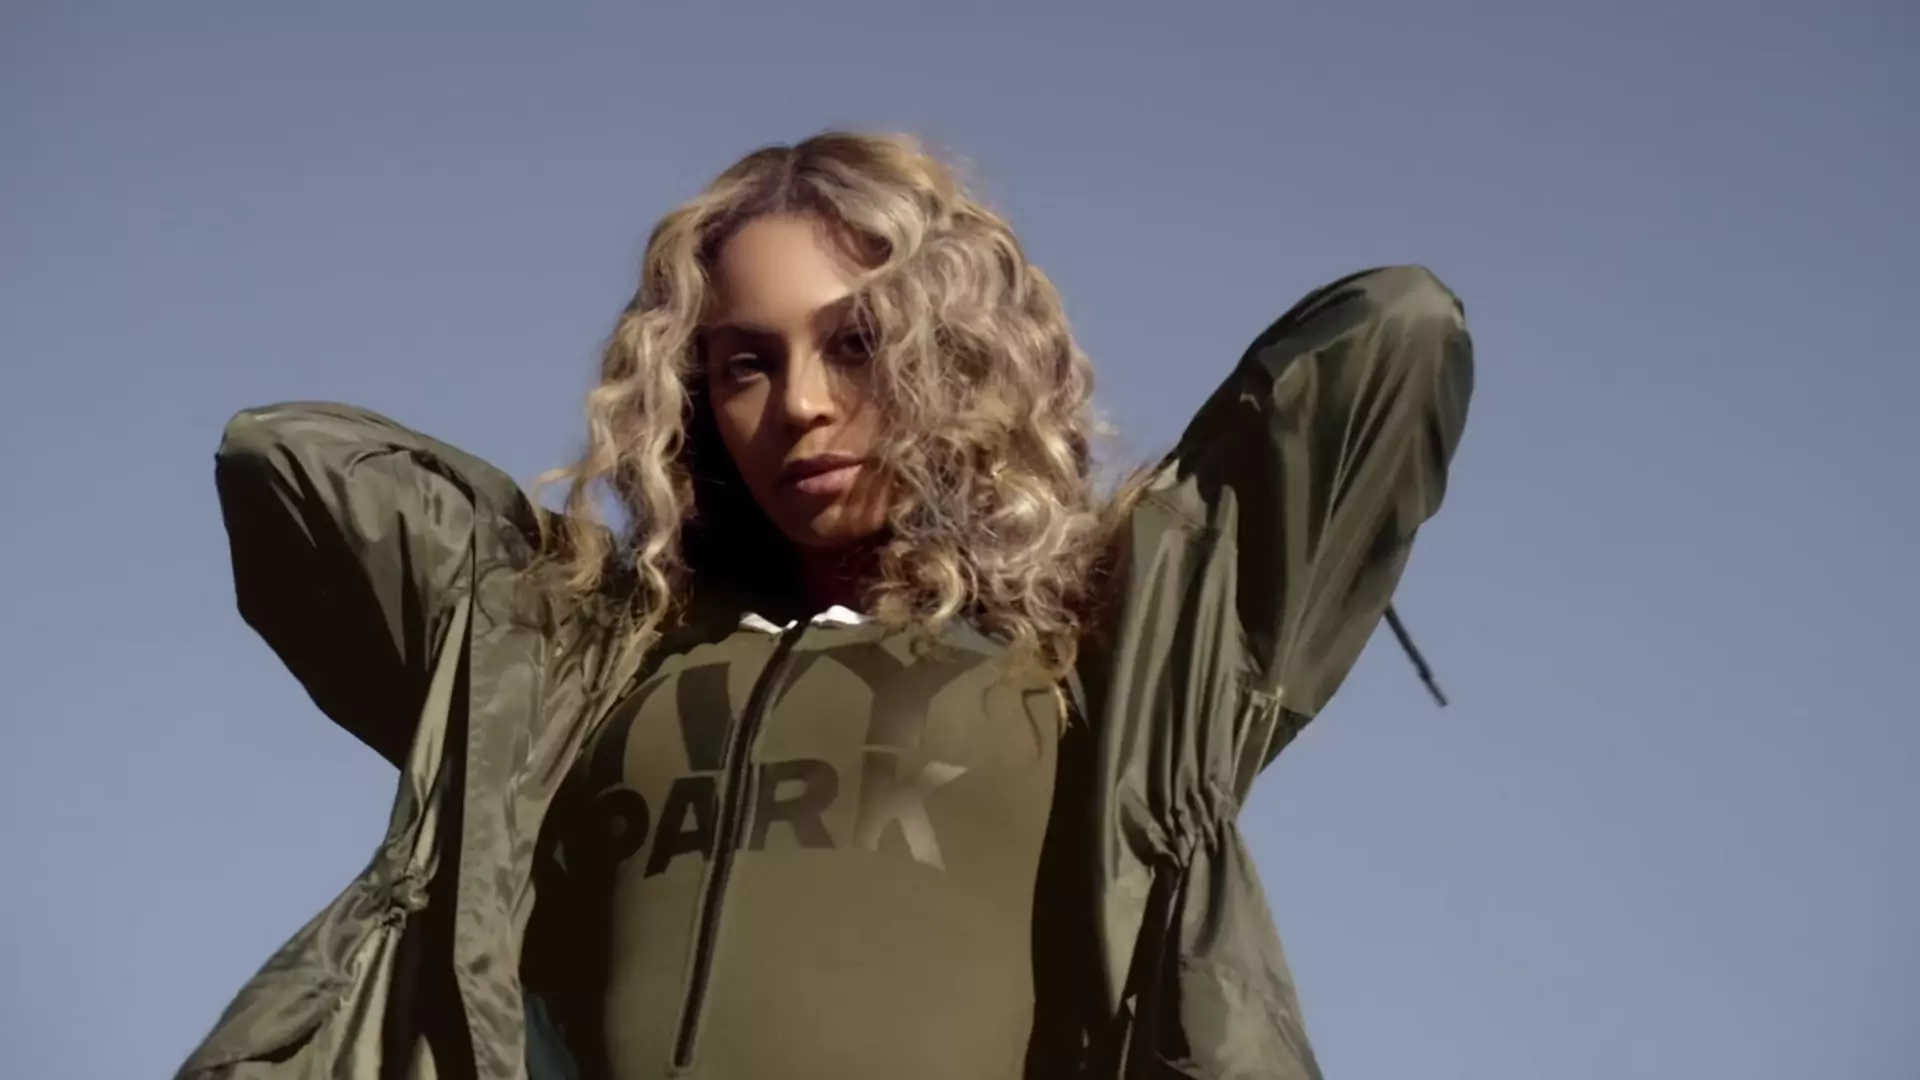 W co Beyonce ubierze cię tegorocznej wiosny? Mamy reklamę nowej kolekcji Ivy Park